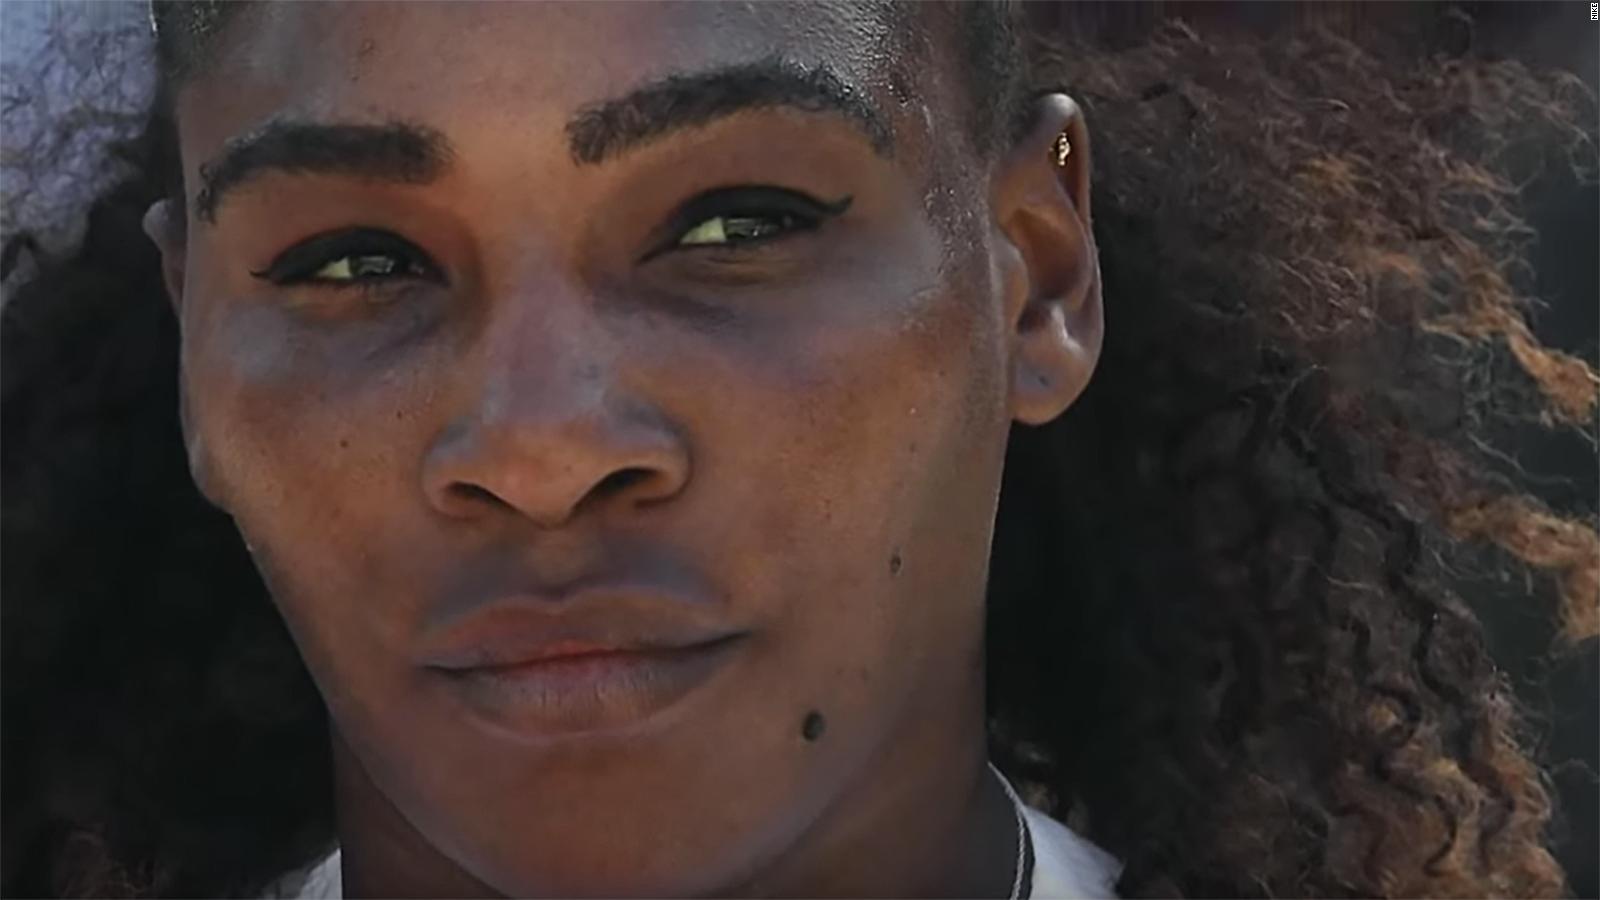 cuenca Abandonado cueva El poderoso comercial de Nike en voz de Serena Williams | Video | CNN